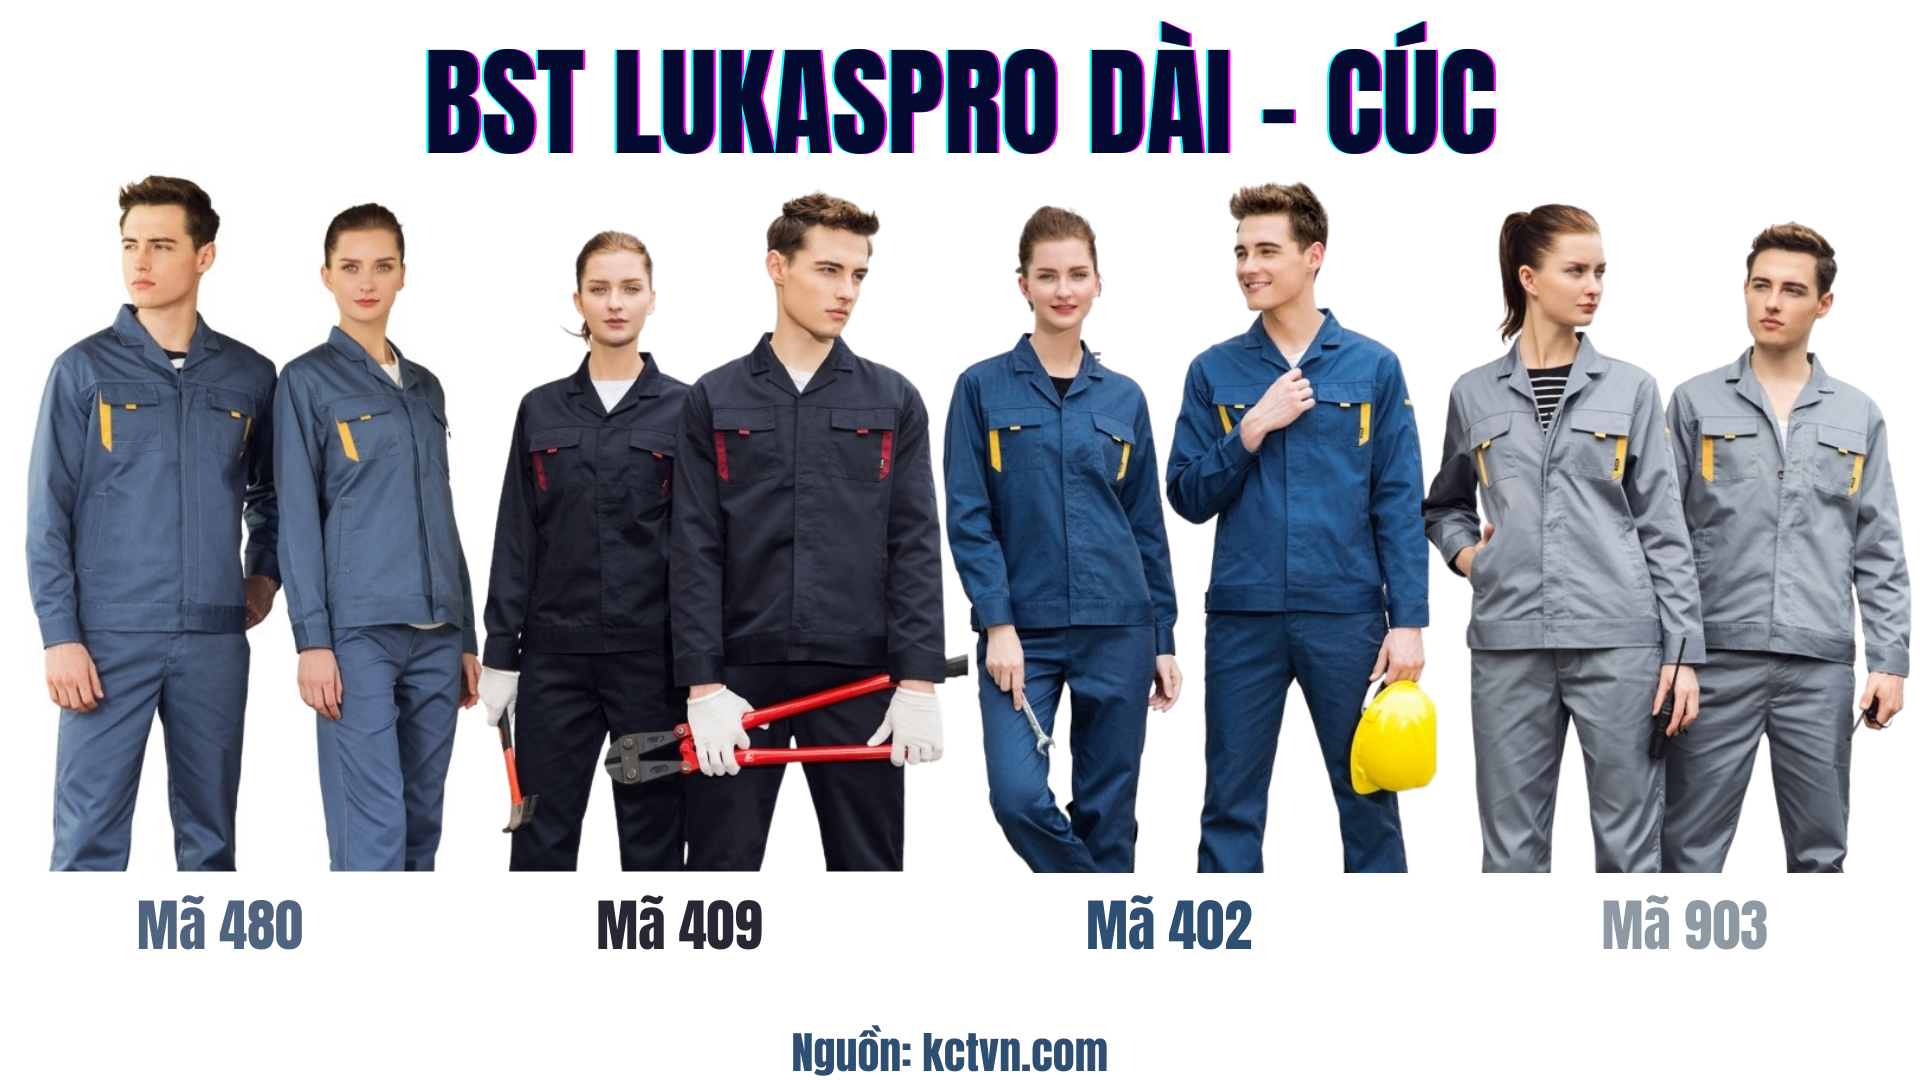 Các mẫu quần áo bảo hộ lao động Lukaspro chính hãng Dài cúc